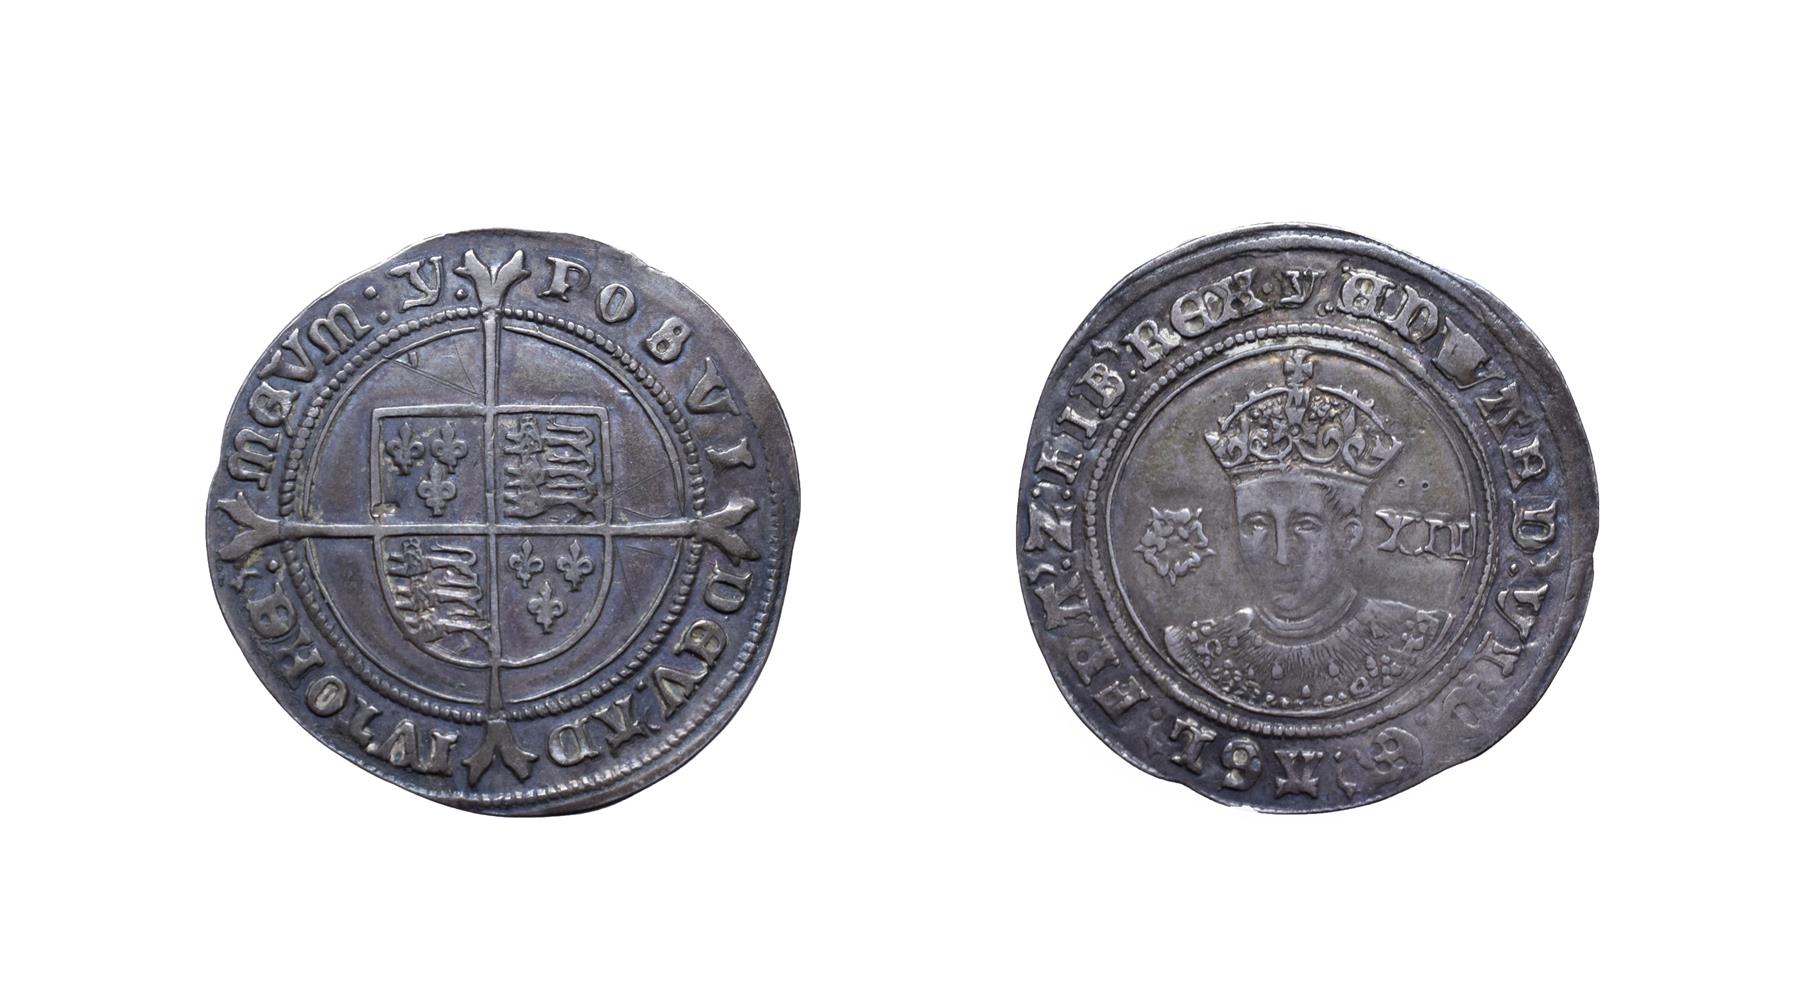 Edward VI, 1551 Shilling. 6.10g, 32.8mm, 8h. Mintmark y, third period, fine silver issue. Obv: